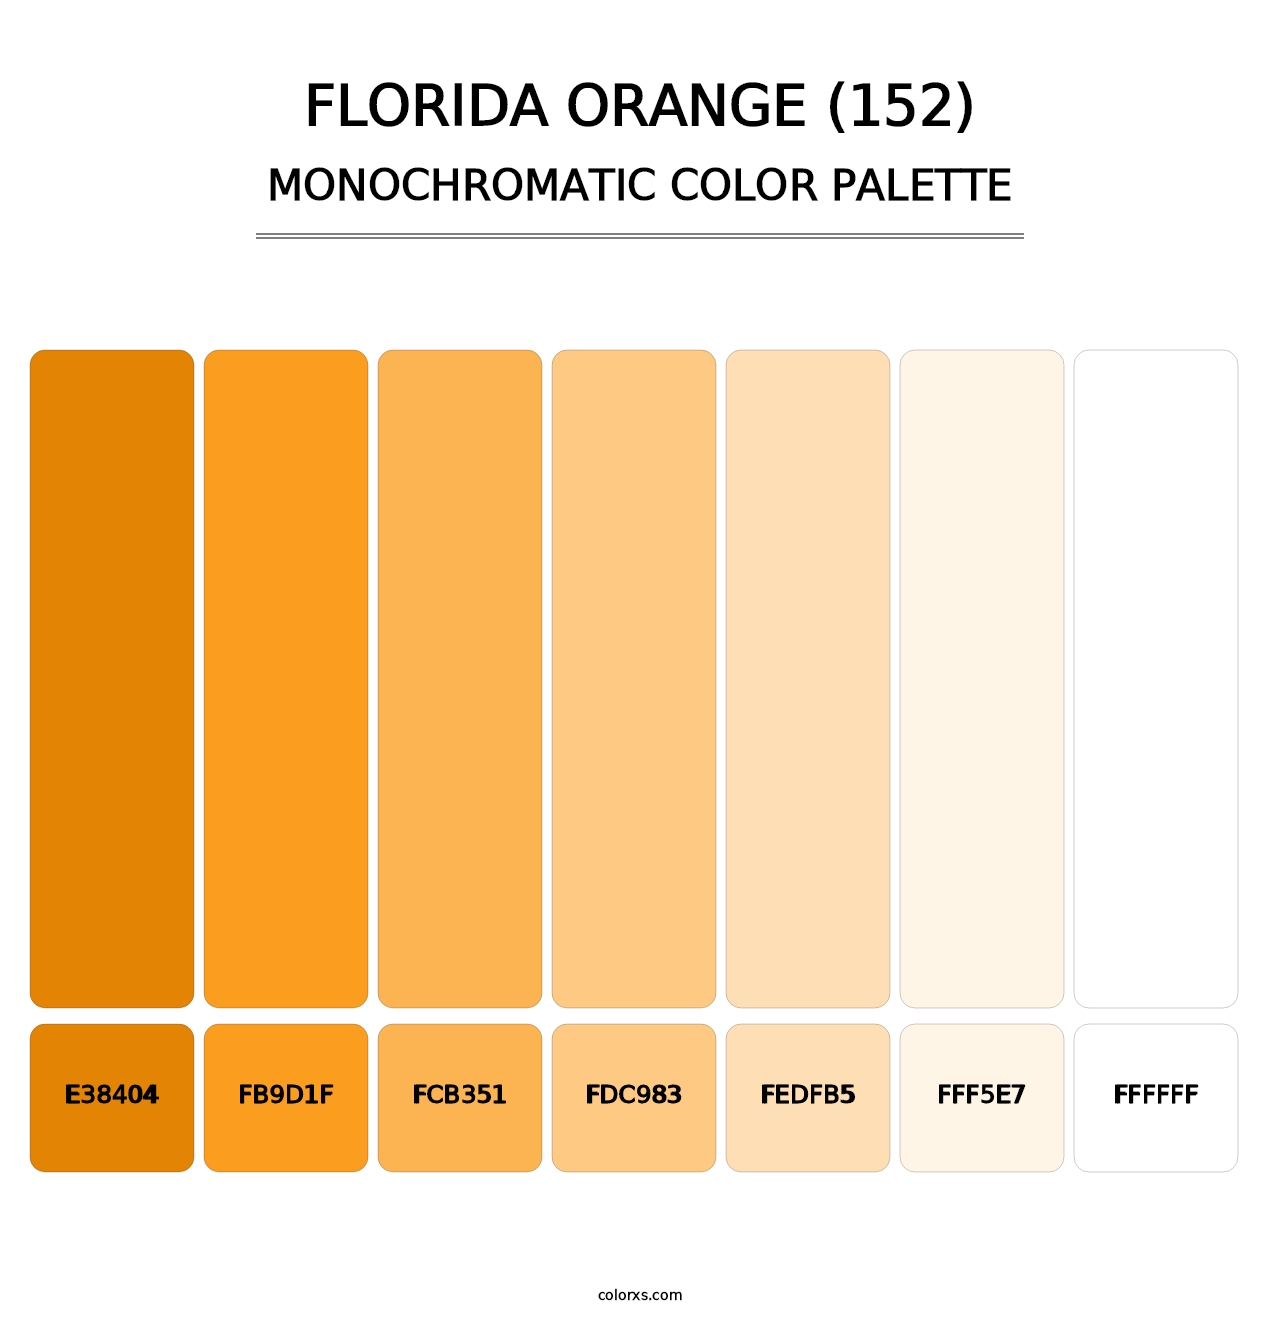 Florida Orange (152) - Monochromatic Color Palette